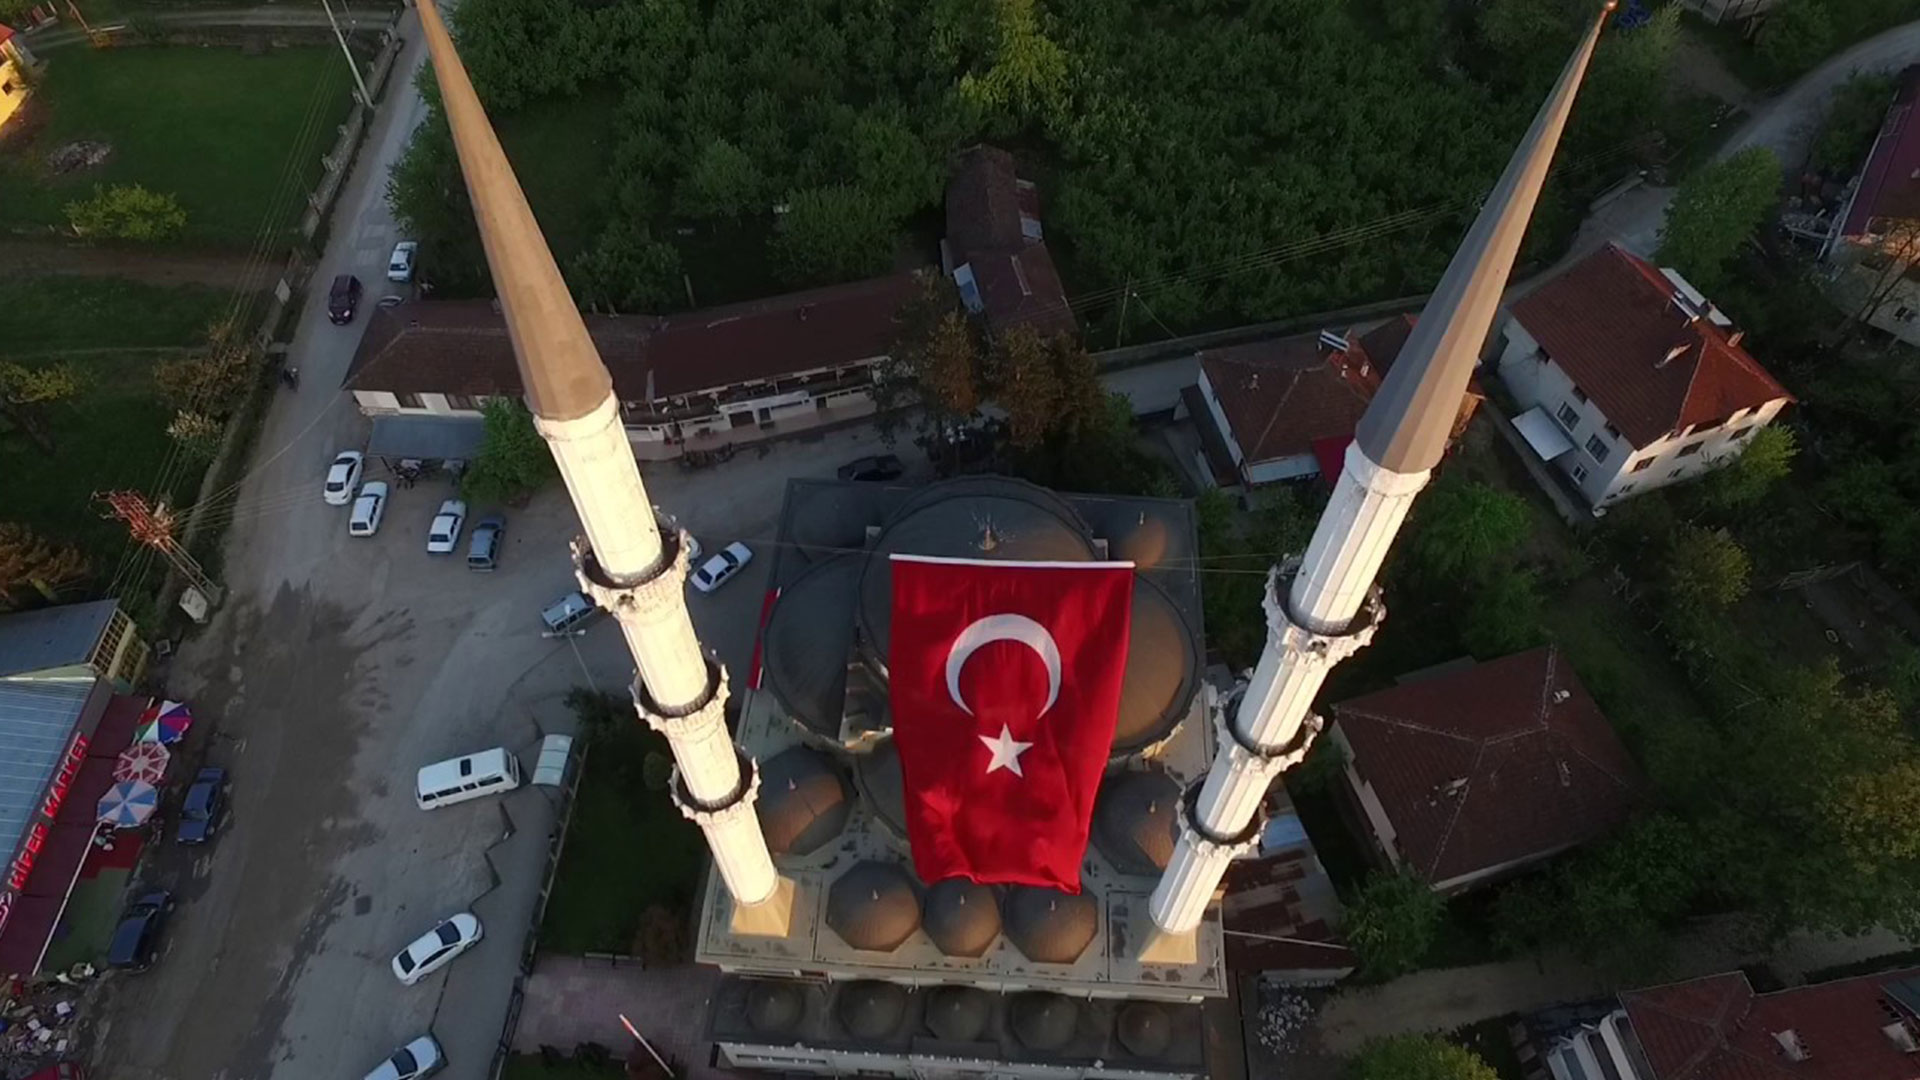 en guzel turk bayrakli manzarali camiler 2